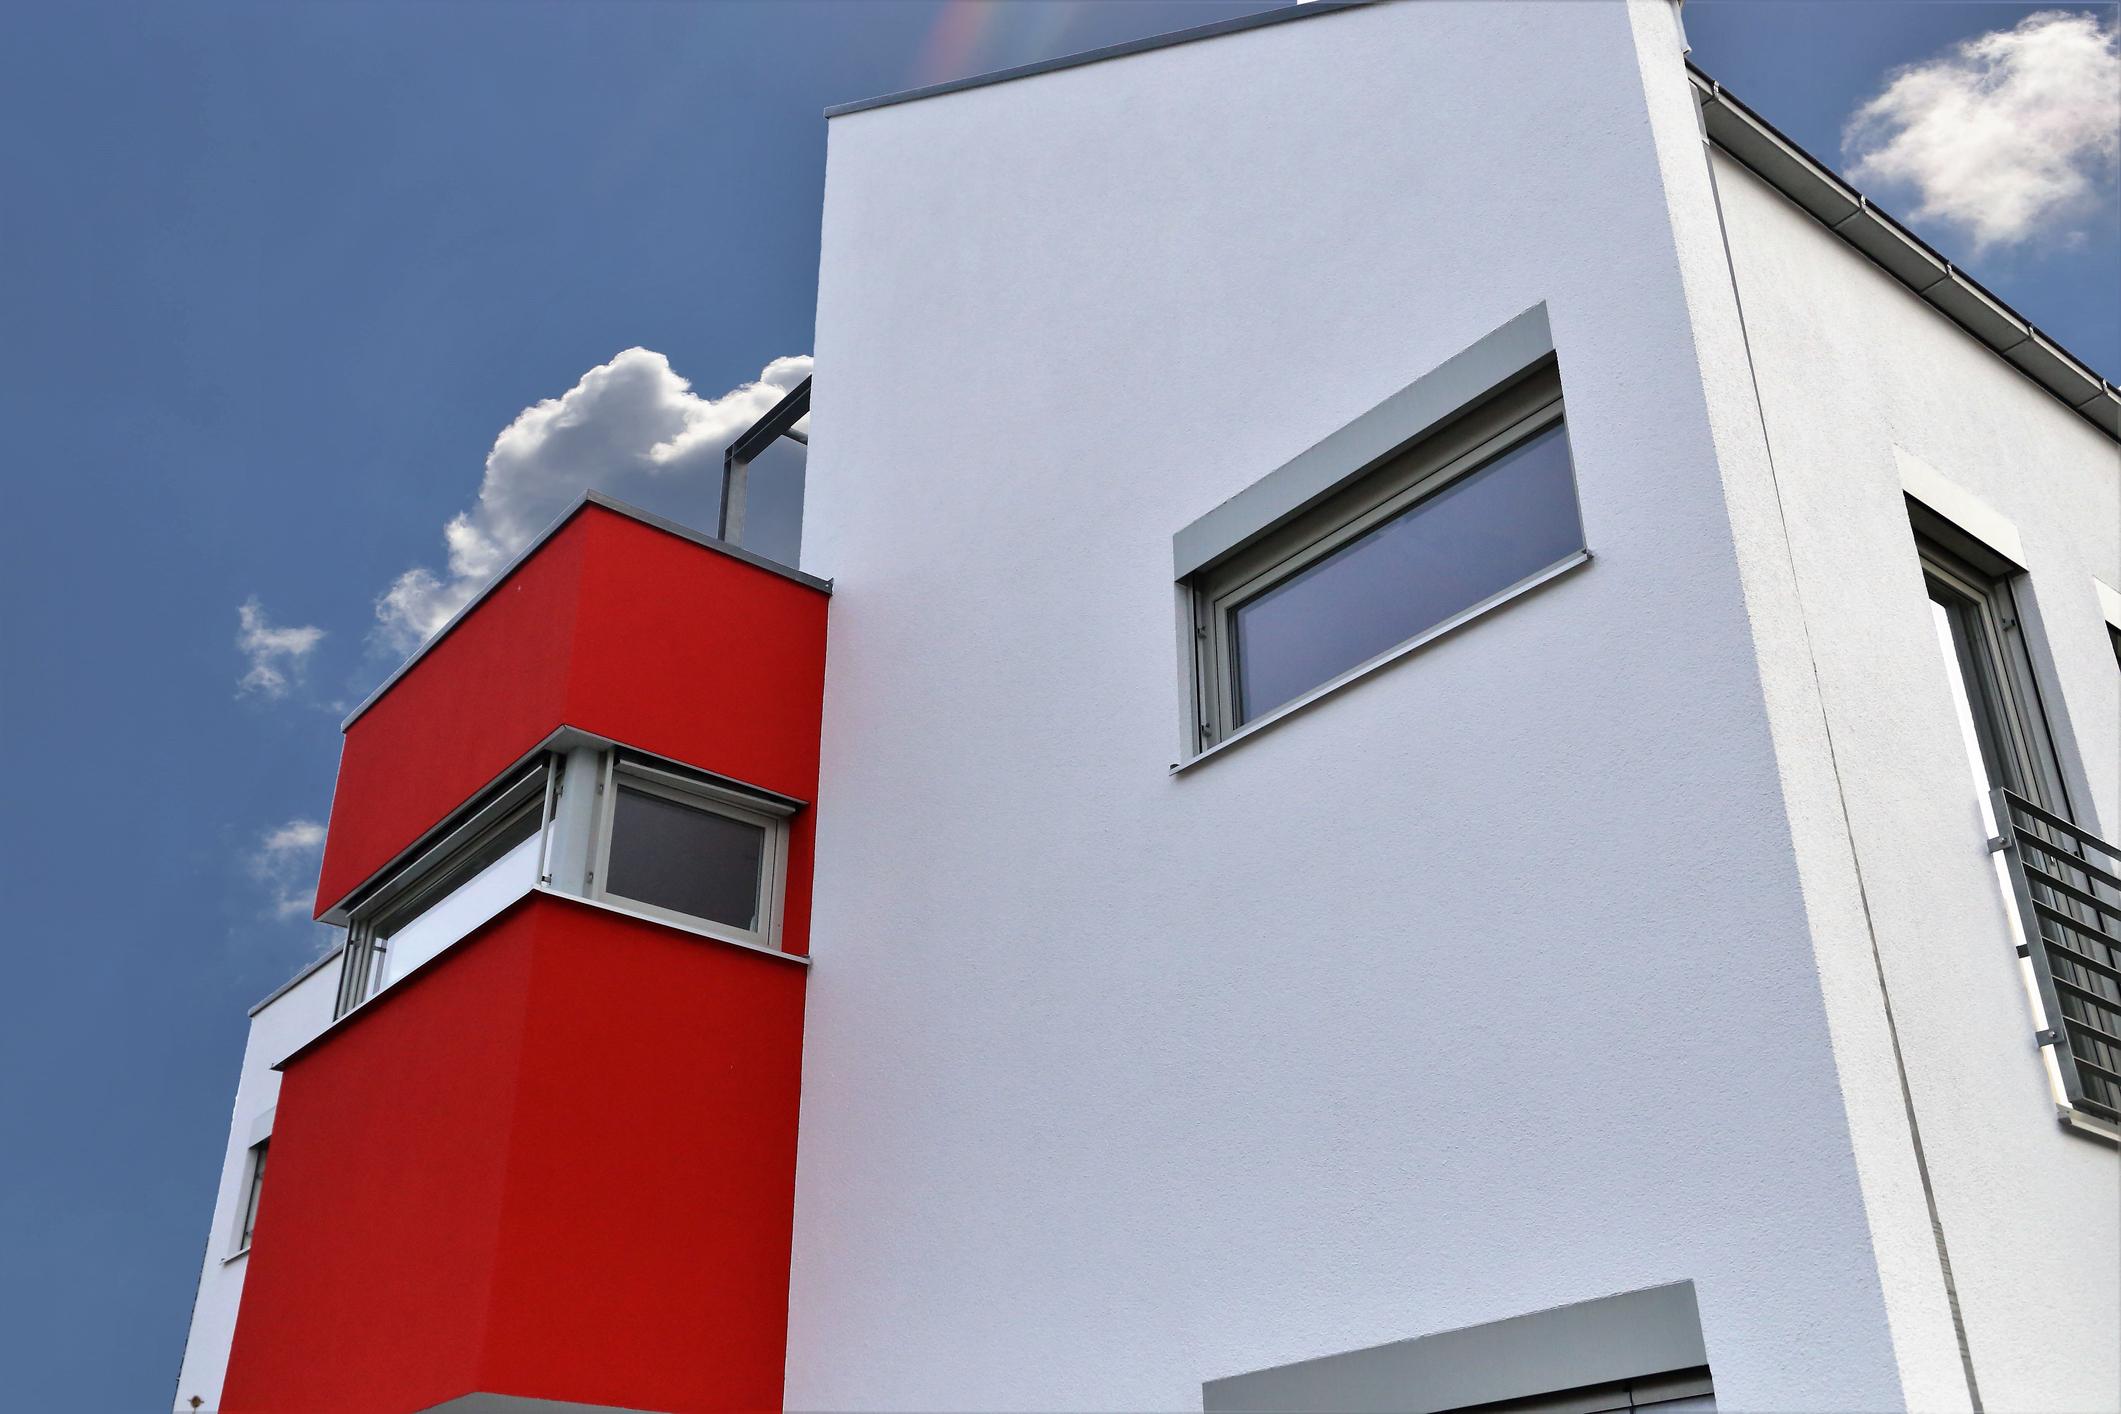 Farbenfrohe Gebäudefassade in rot und weiss 